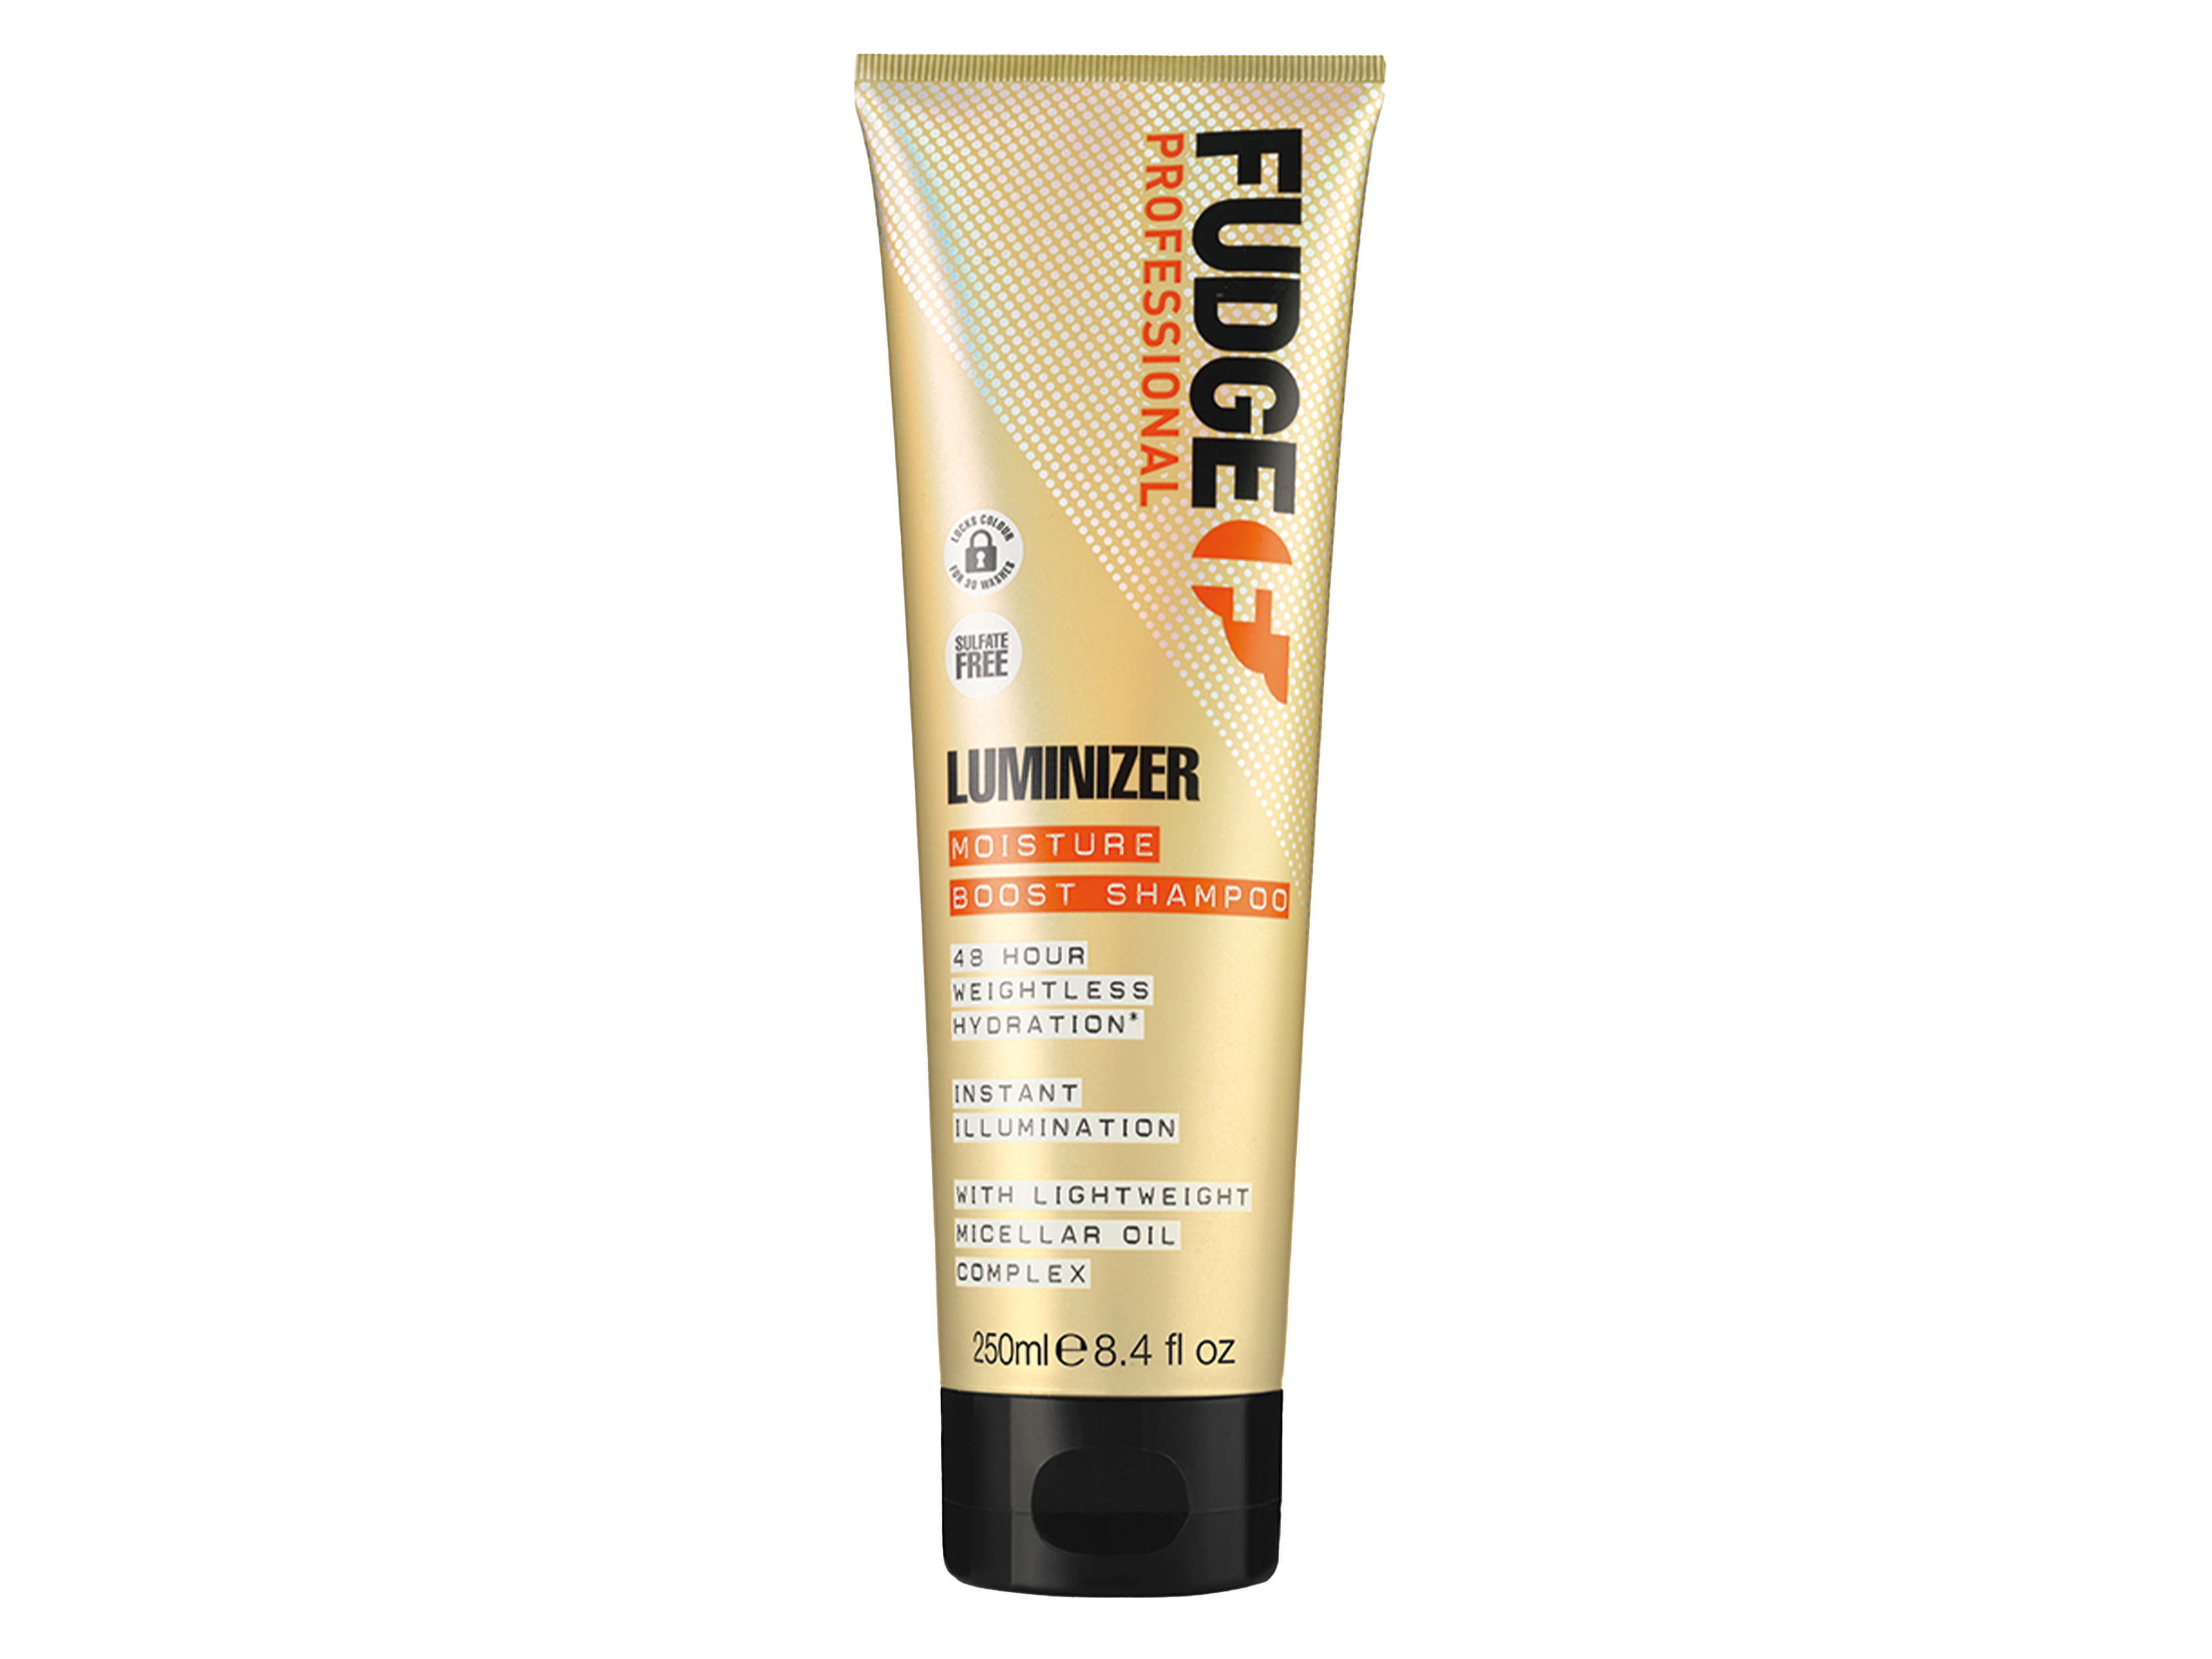 Fudge Luminizer Moisture Boost Shampoo, 250 ml